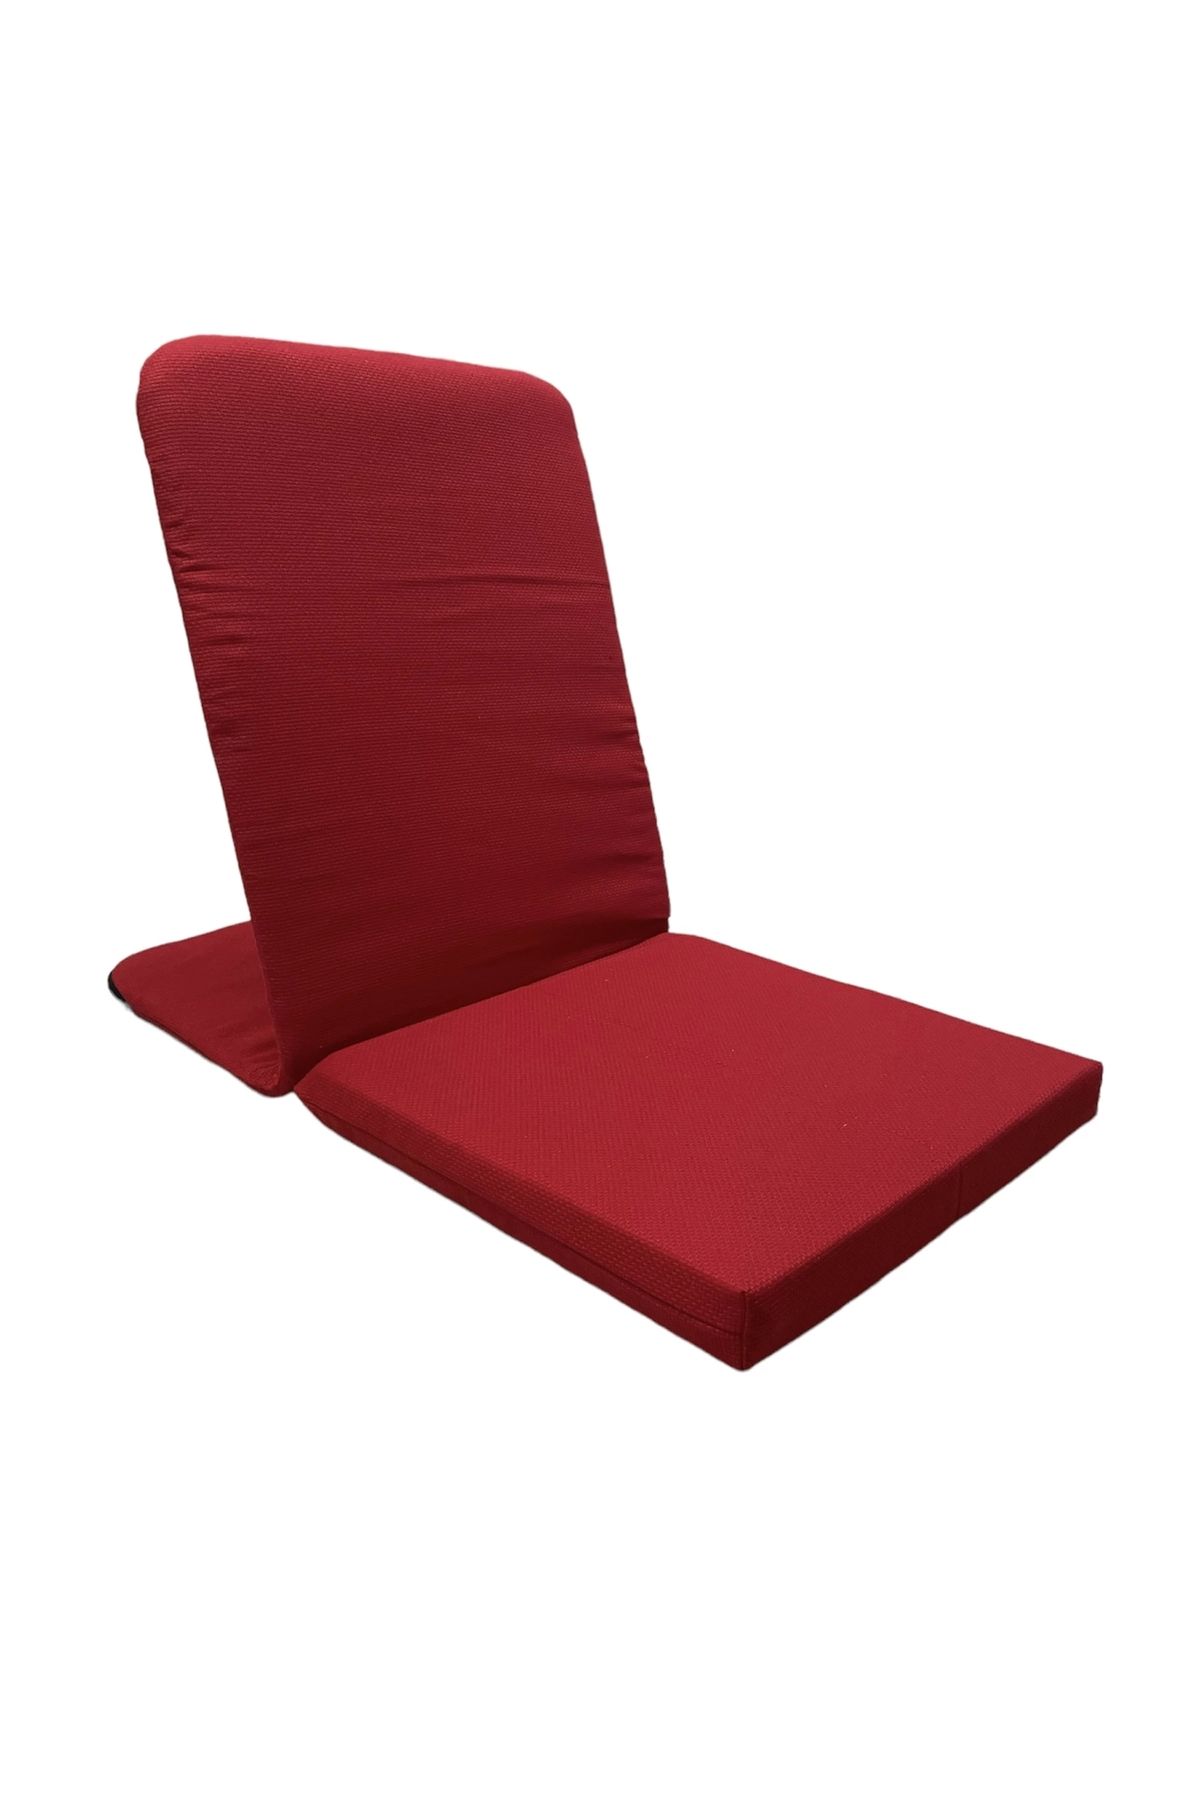 SIFIR312 Meditasyon Sandalyesi - Backjack / Pamuklu Hava Alabilen Kumaş